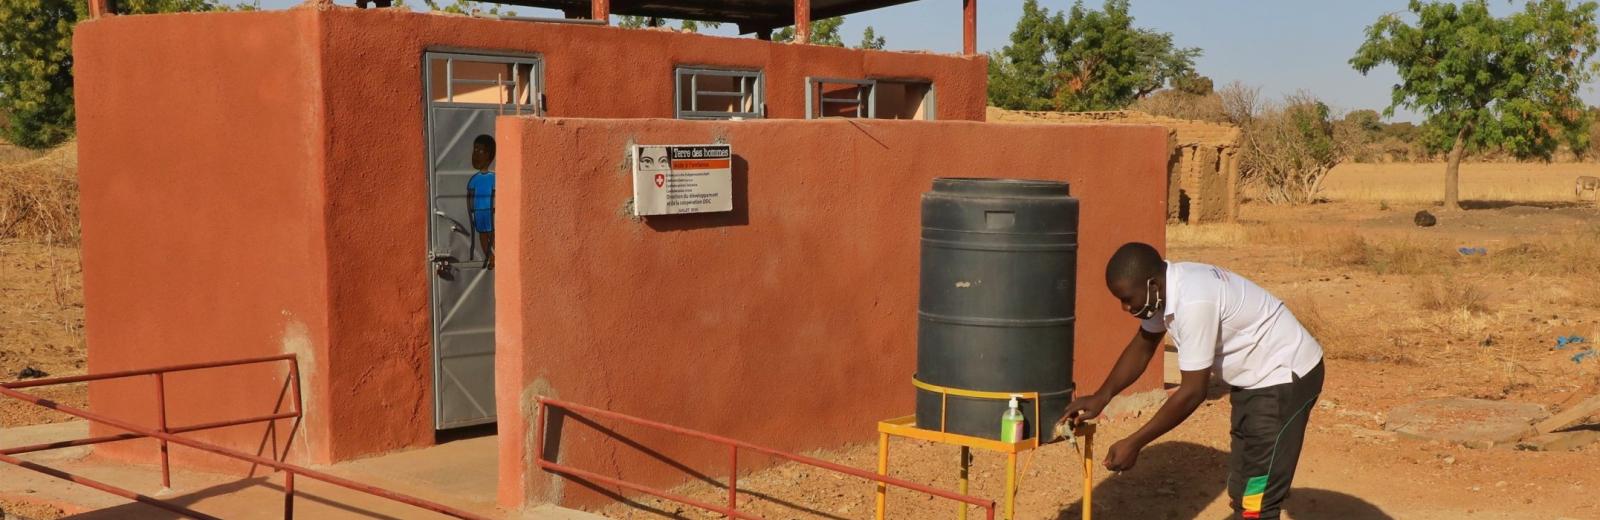 Le consortium suisse pour l'eau et l'assainissement s'efforce de fournir des infrastructures sanitaires dignes et adaptées à la mobilité de chacun au Mali © Terre des hommes